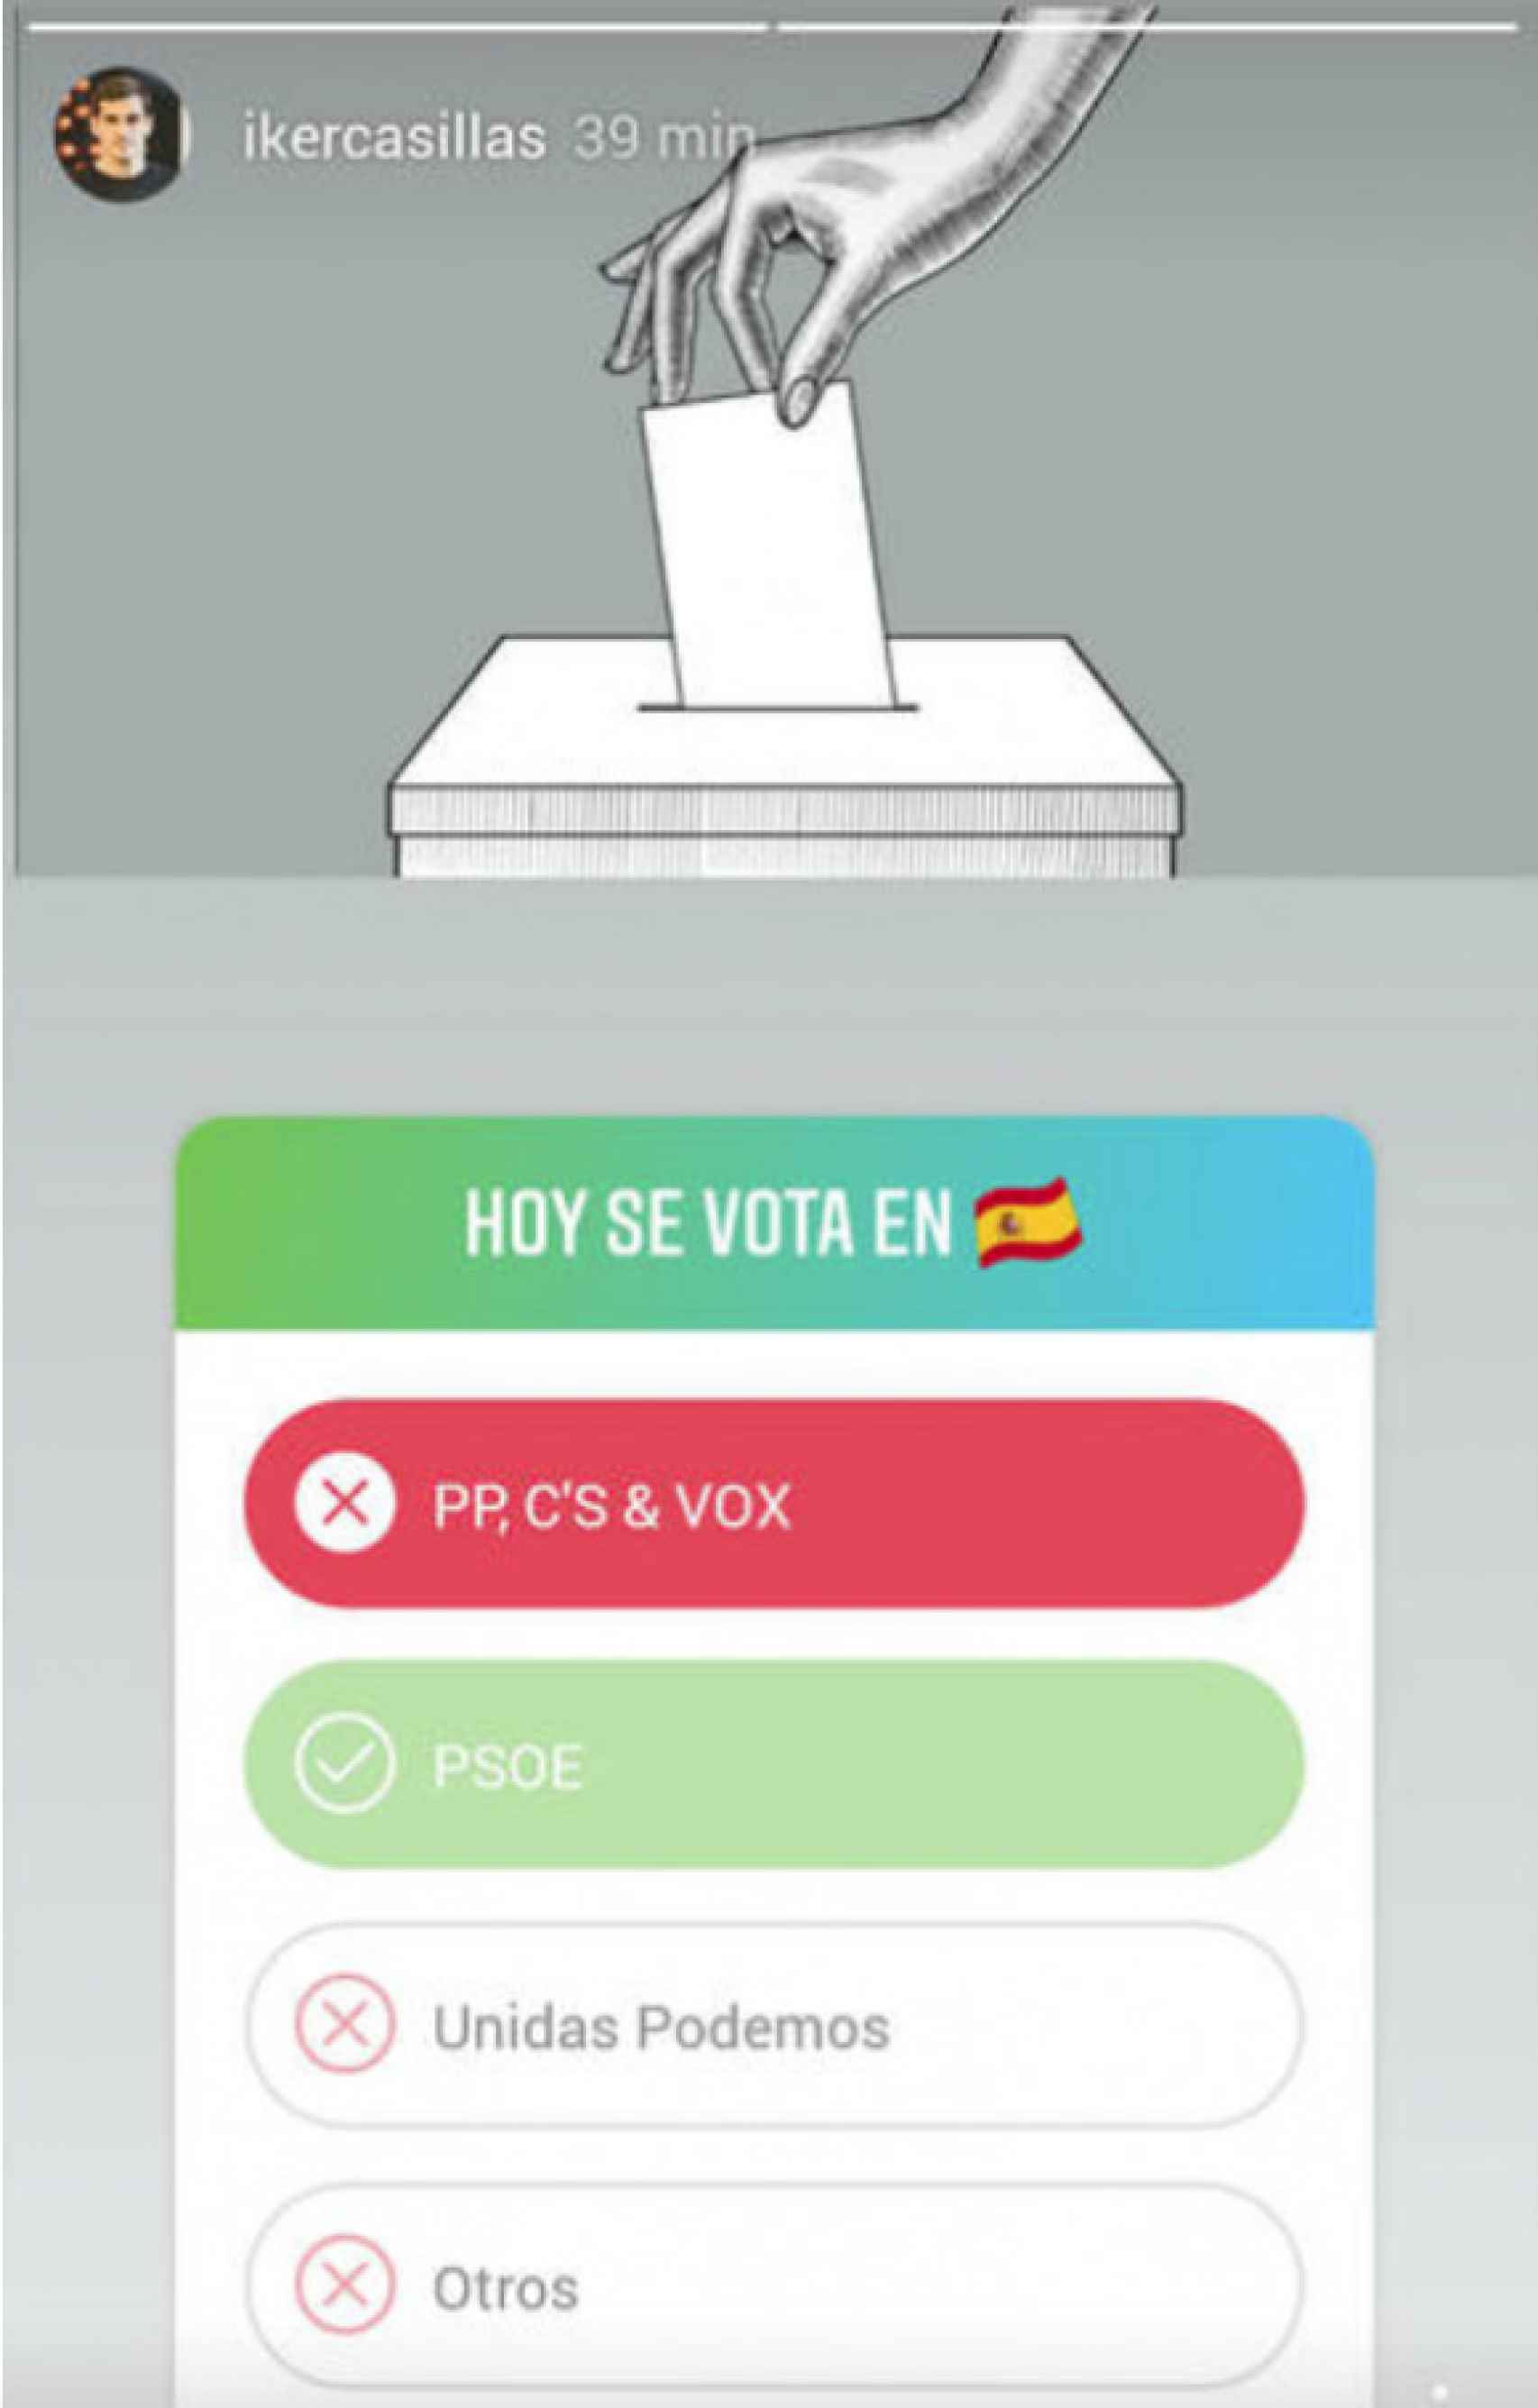 La pifia de Casillas que puede revelar su voto en las elecciones generales